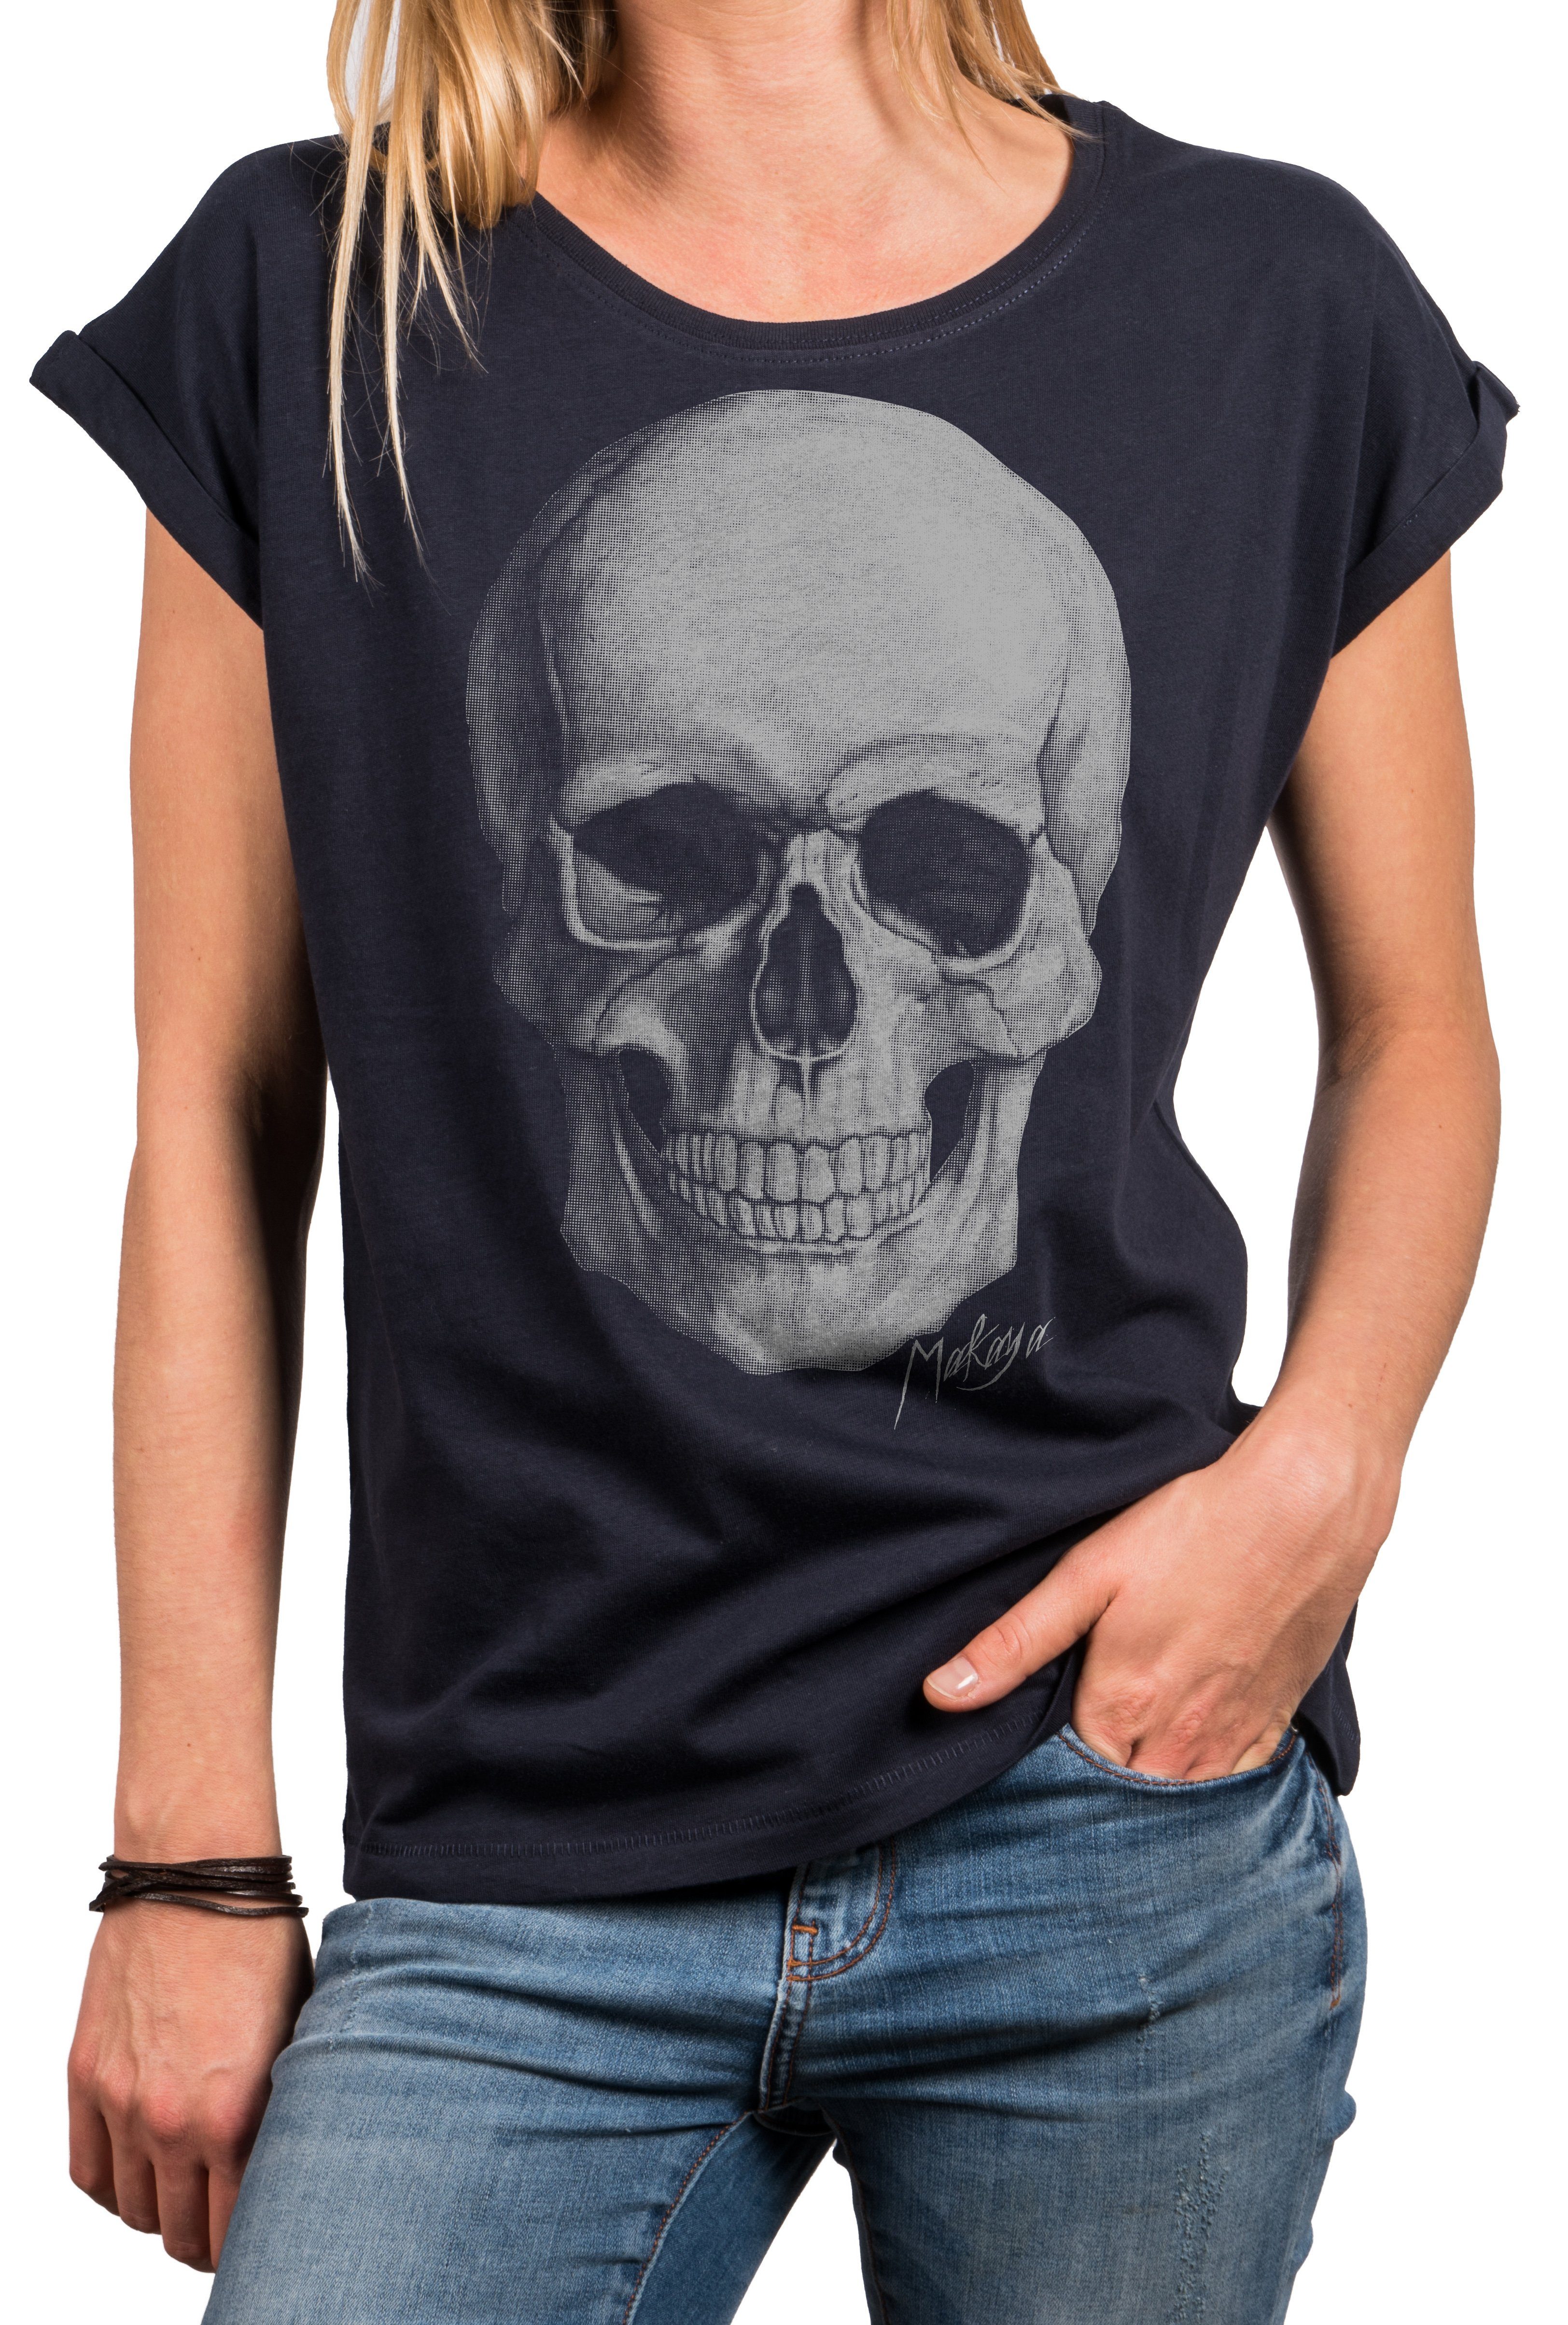 MAKAYA Print-Shirt Sexy Skull Rock Shirt für Damen - Oversize Sommer Tunika locker lässig (elegant, schwarz, blau, grau) große Größen